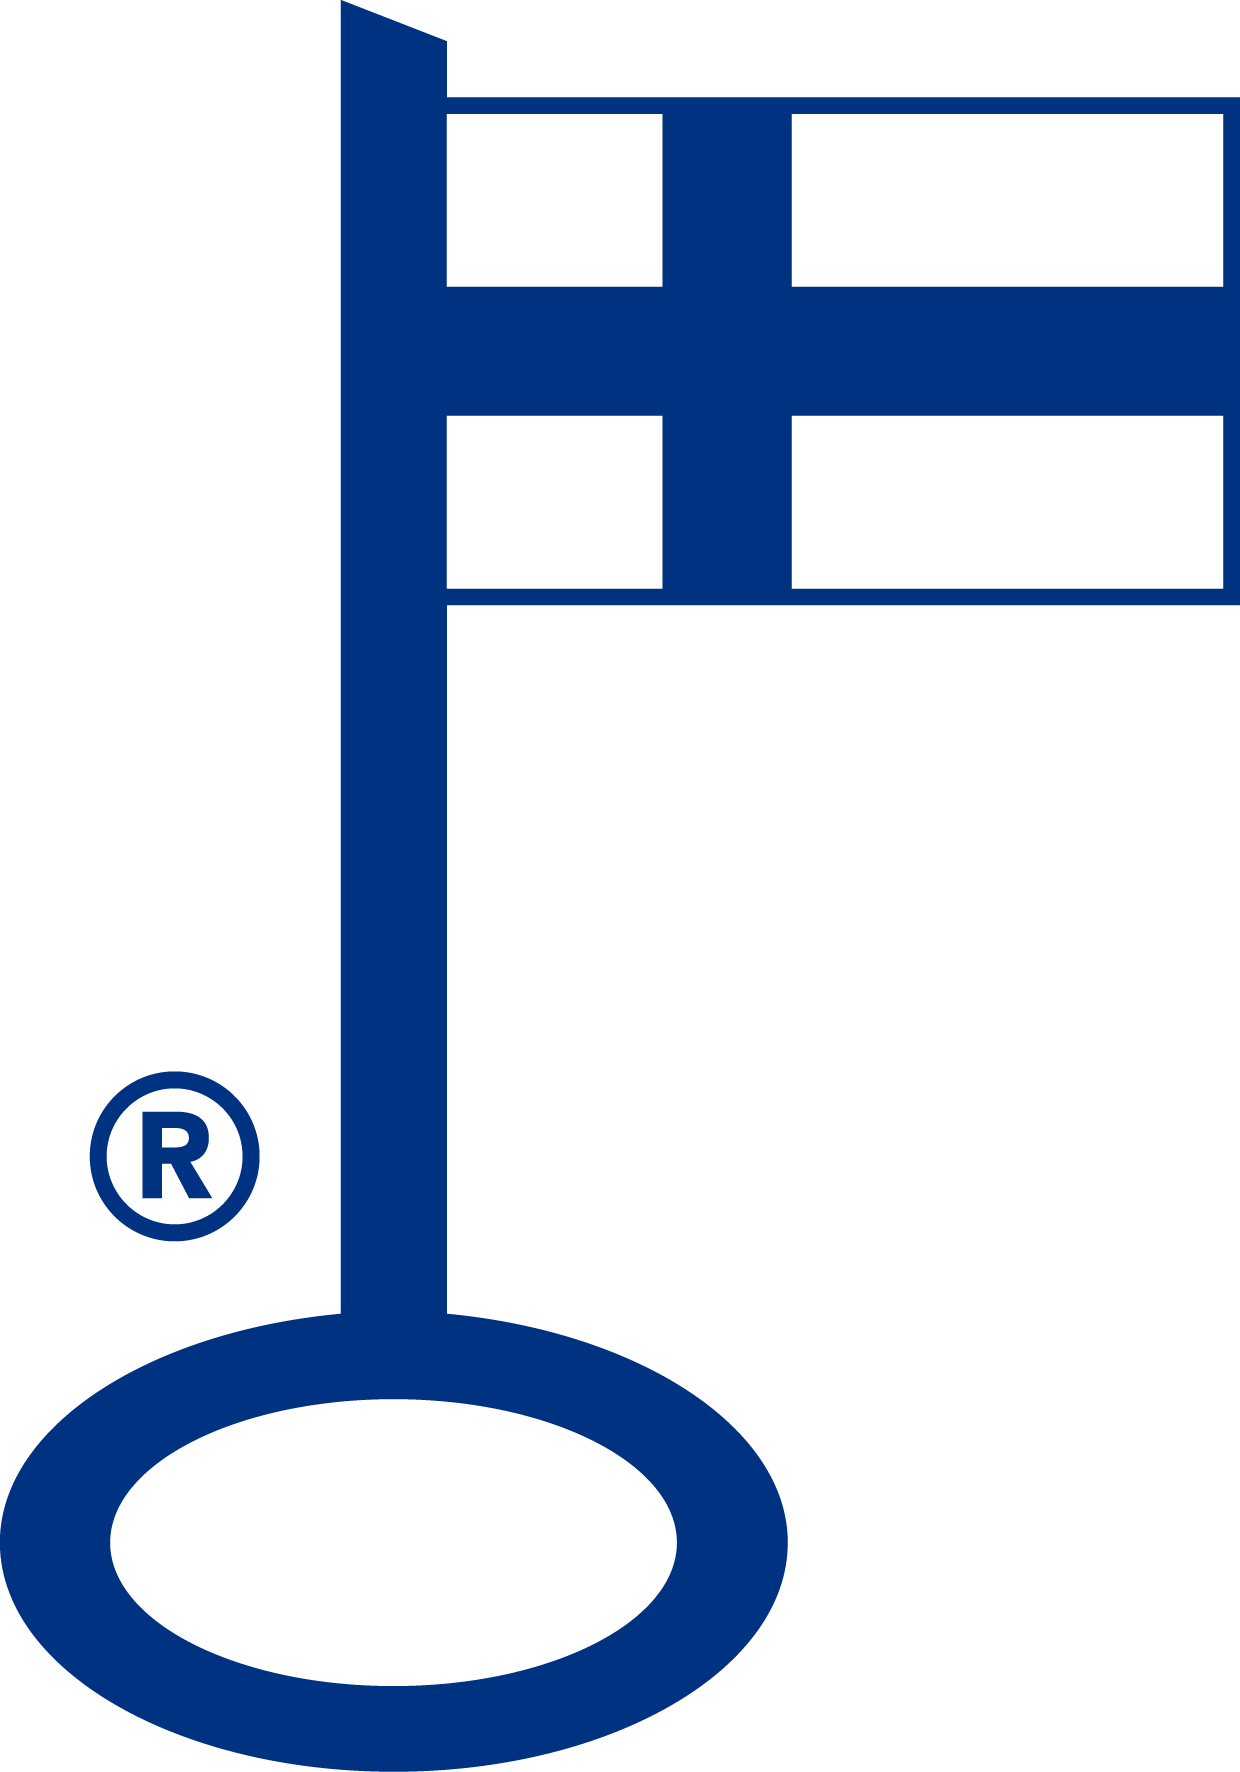 MAXX on ainoa suomalainen apteekkijärjestelmä. Se on saanut tästä tunnustukseksi Avainlipun.